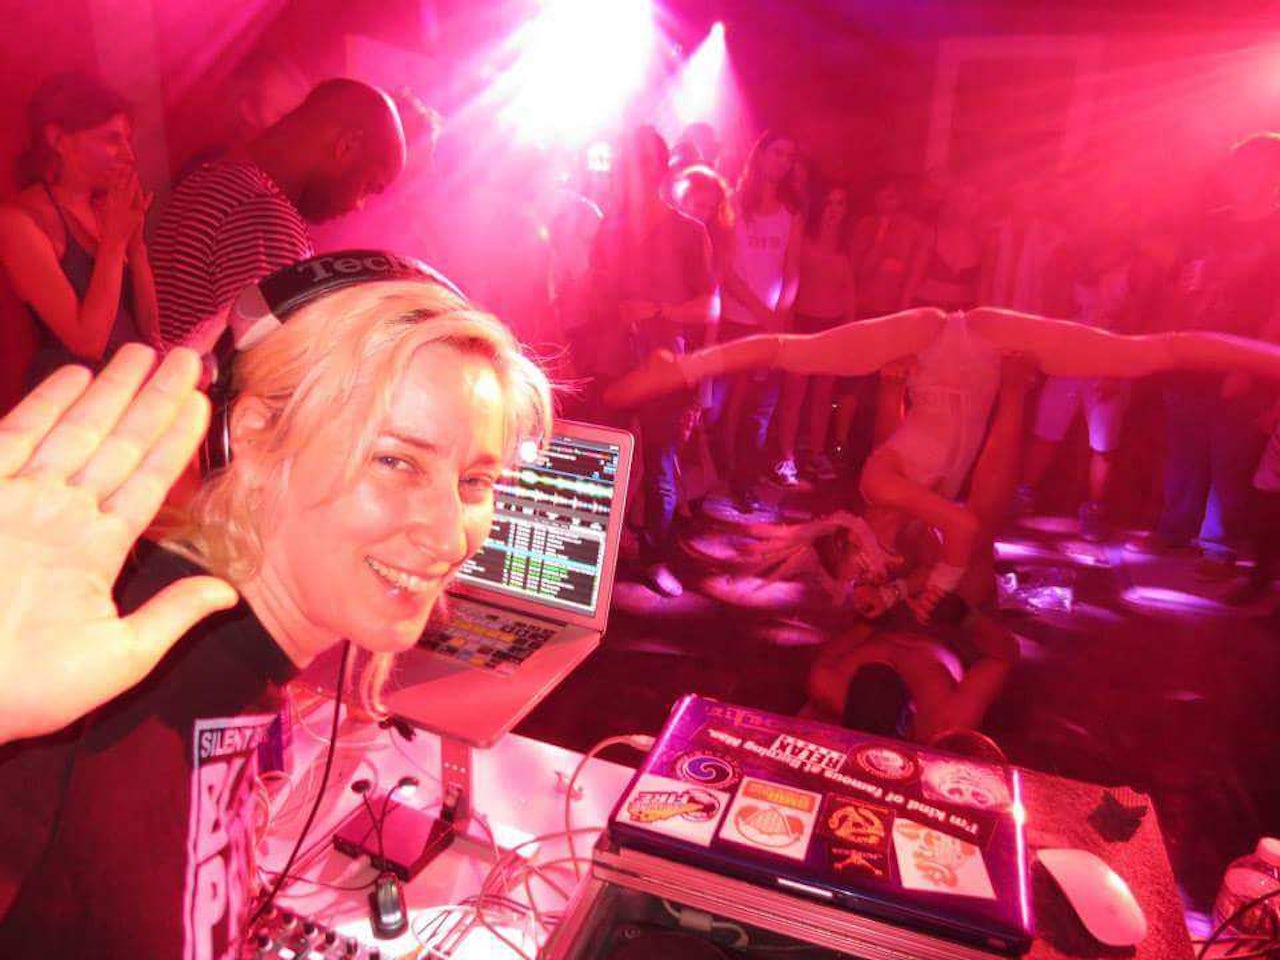 1280px x 960px - What it's like to DJ a sex party | The Outline